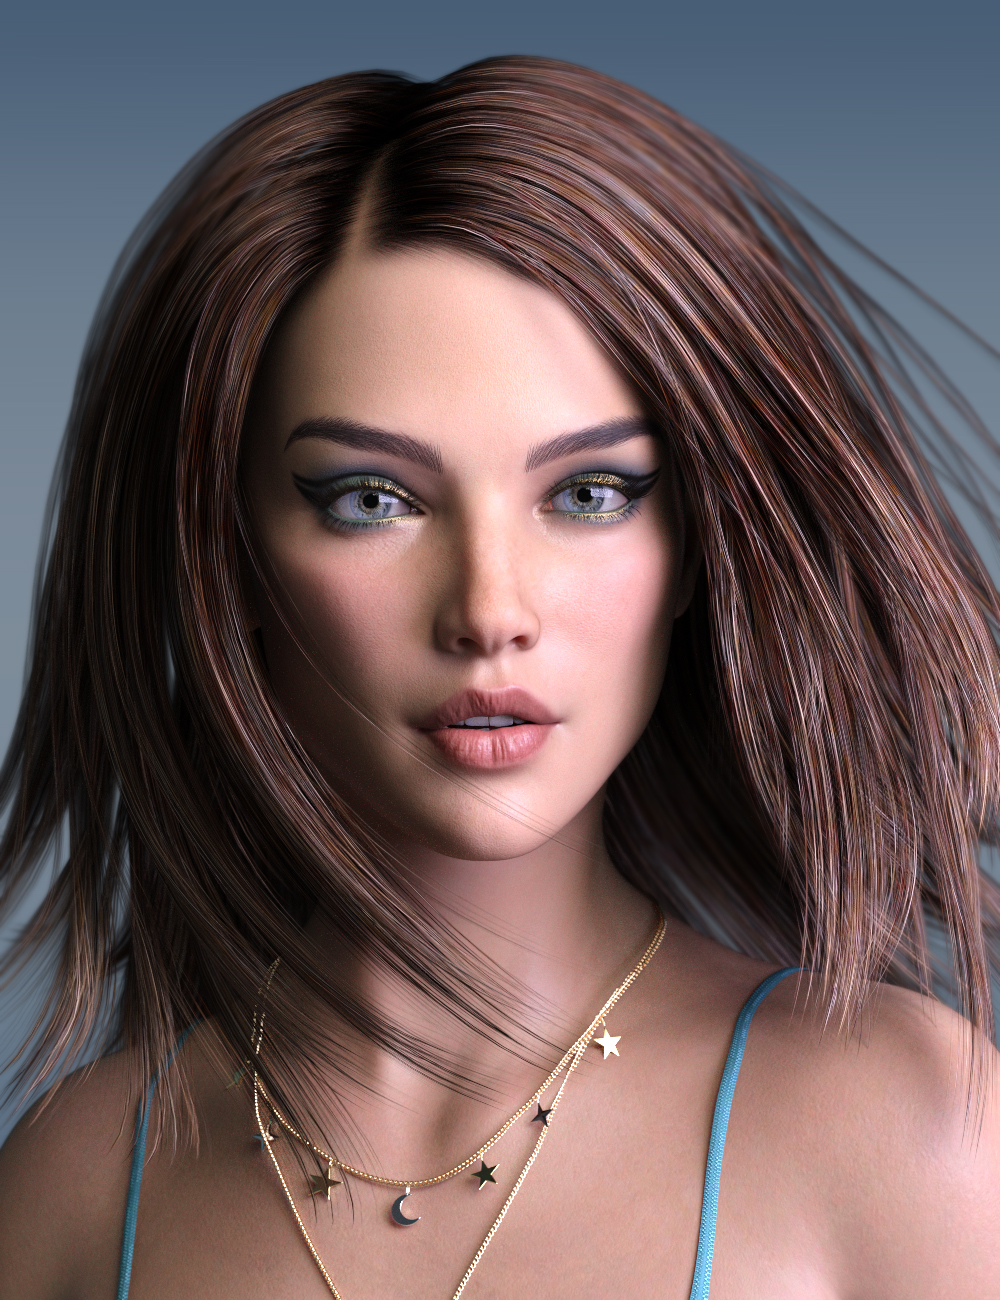 P3D Paris HD for Genesis 8.1 Female by: P3Design, 3D Models by Daz 3D